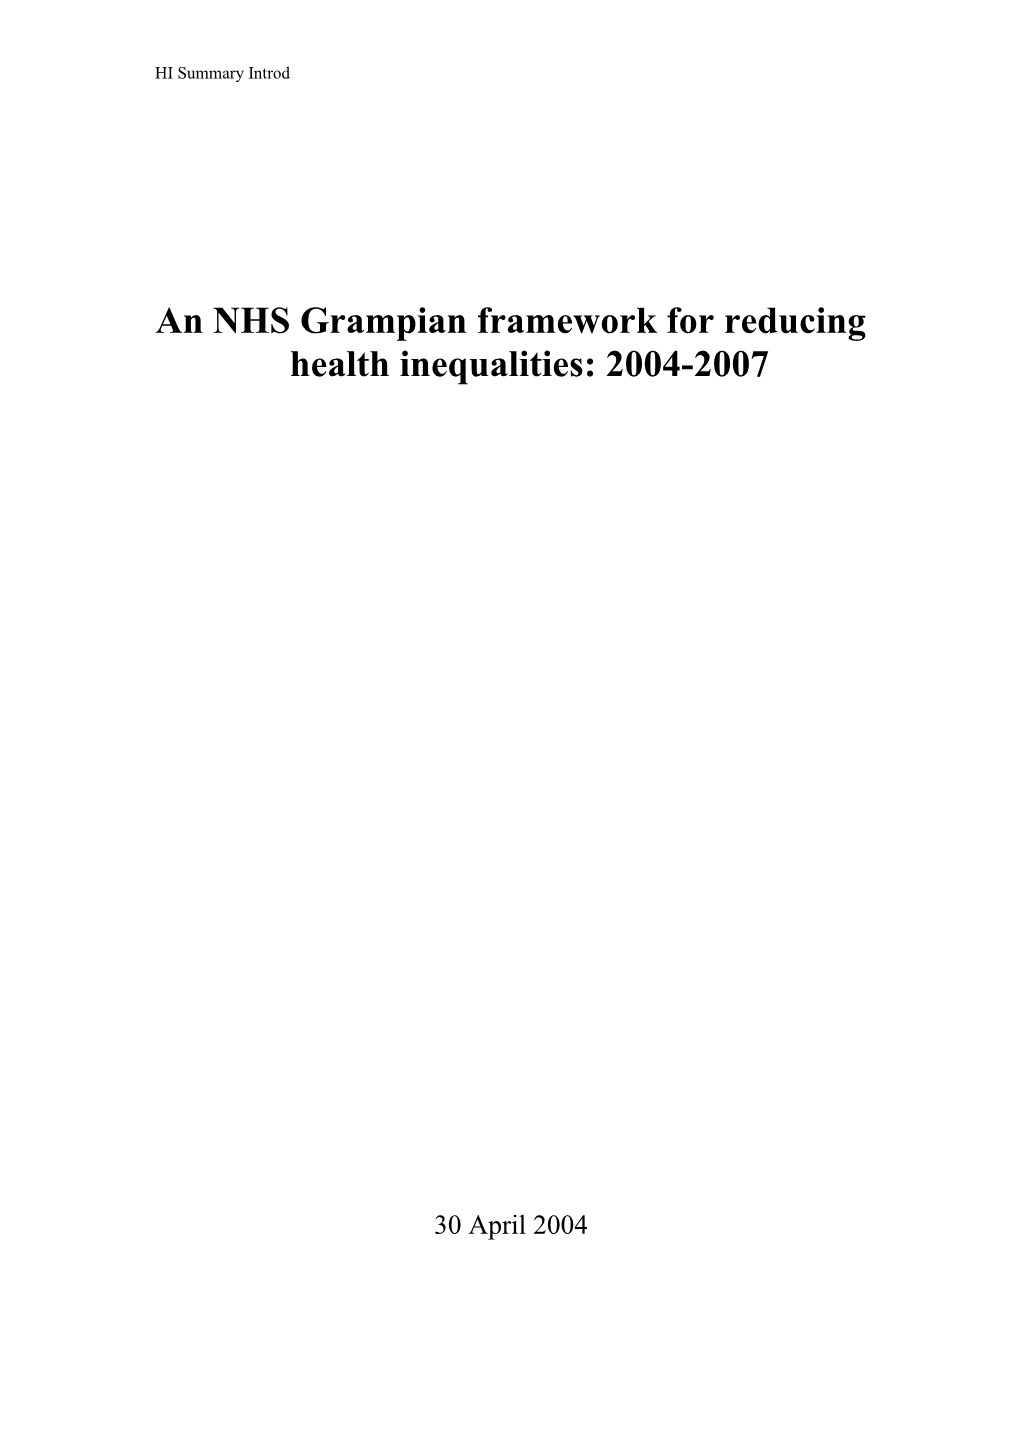 An NHS Grampian Framework for Reducing Health Inequalities 2004-2007